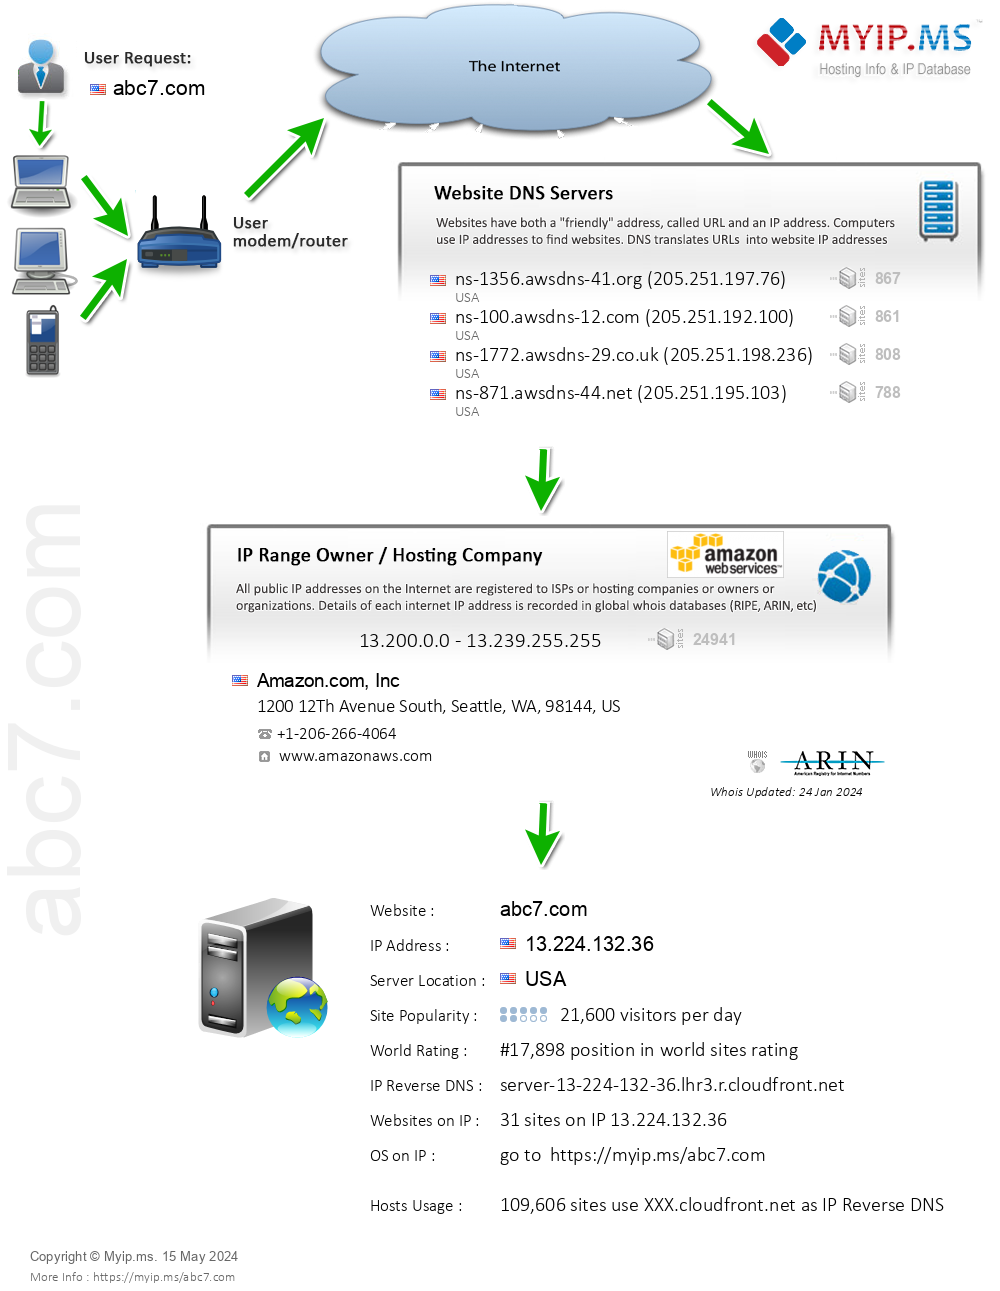 Abc7.com - Website Hosting Visual IP Diagram